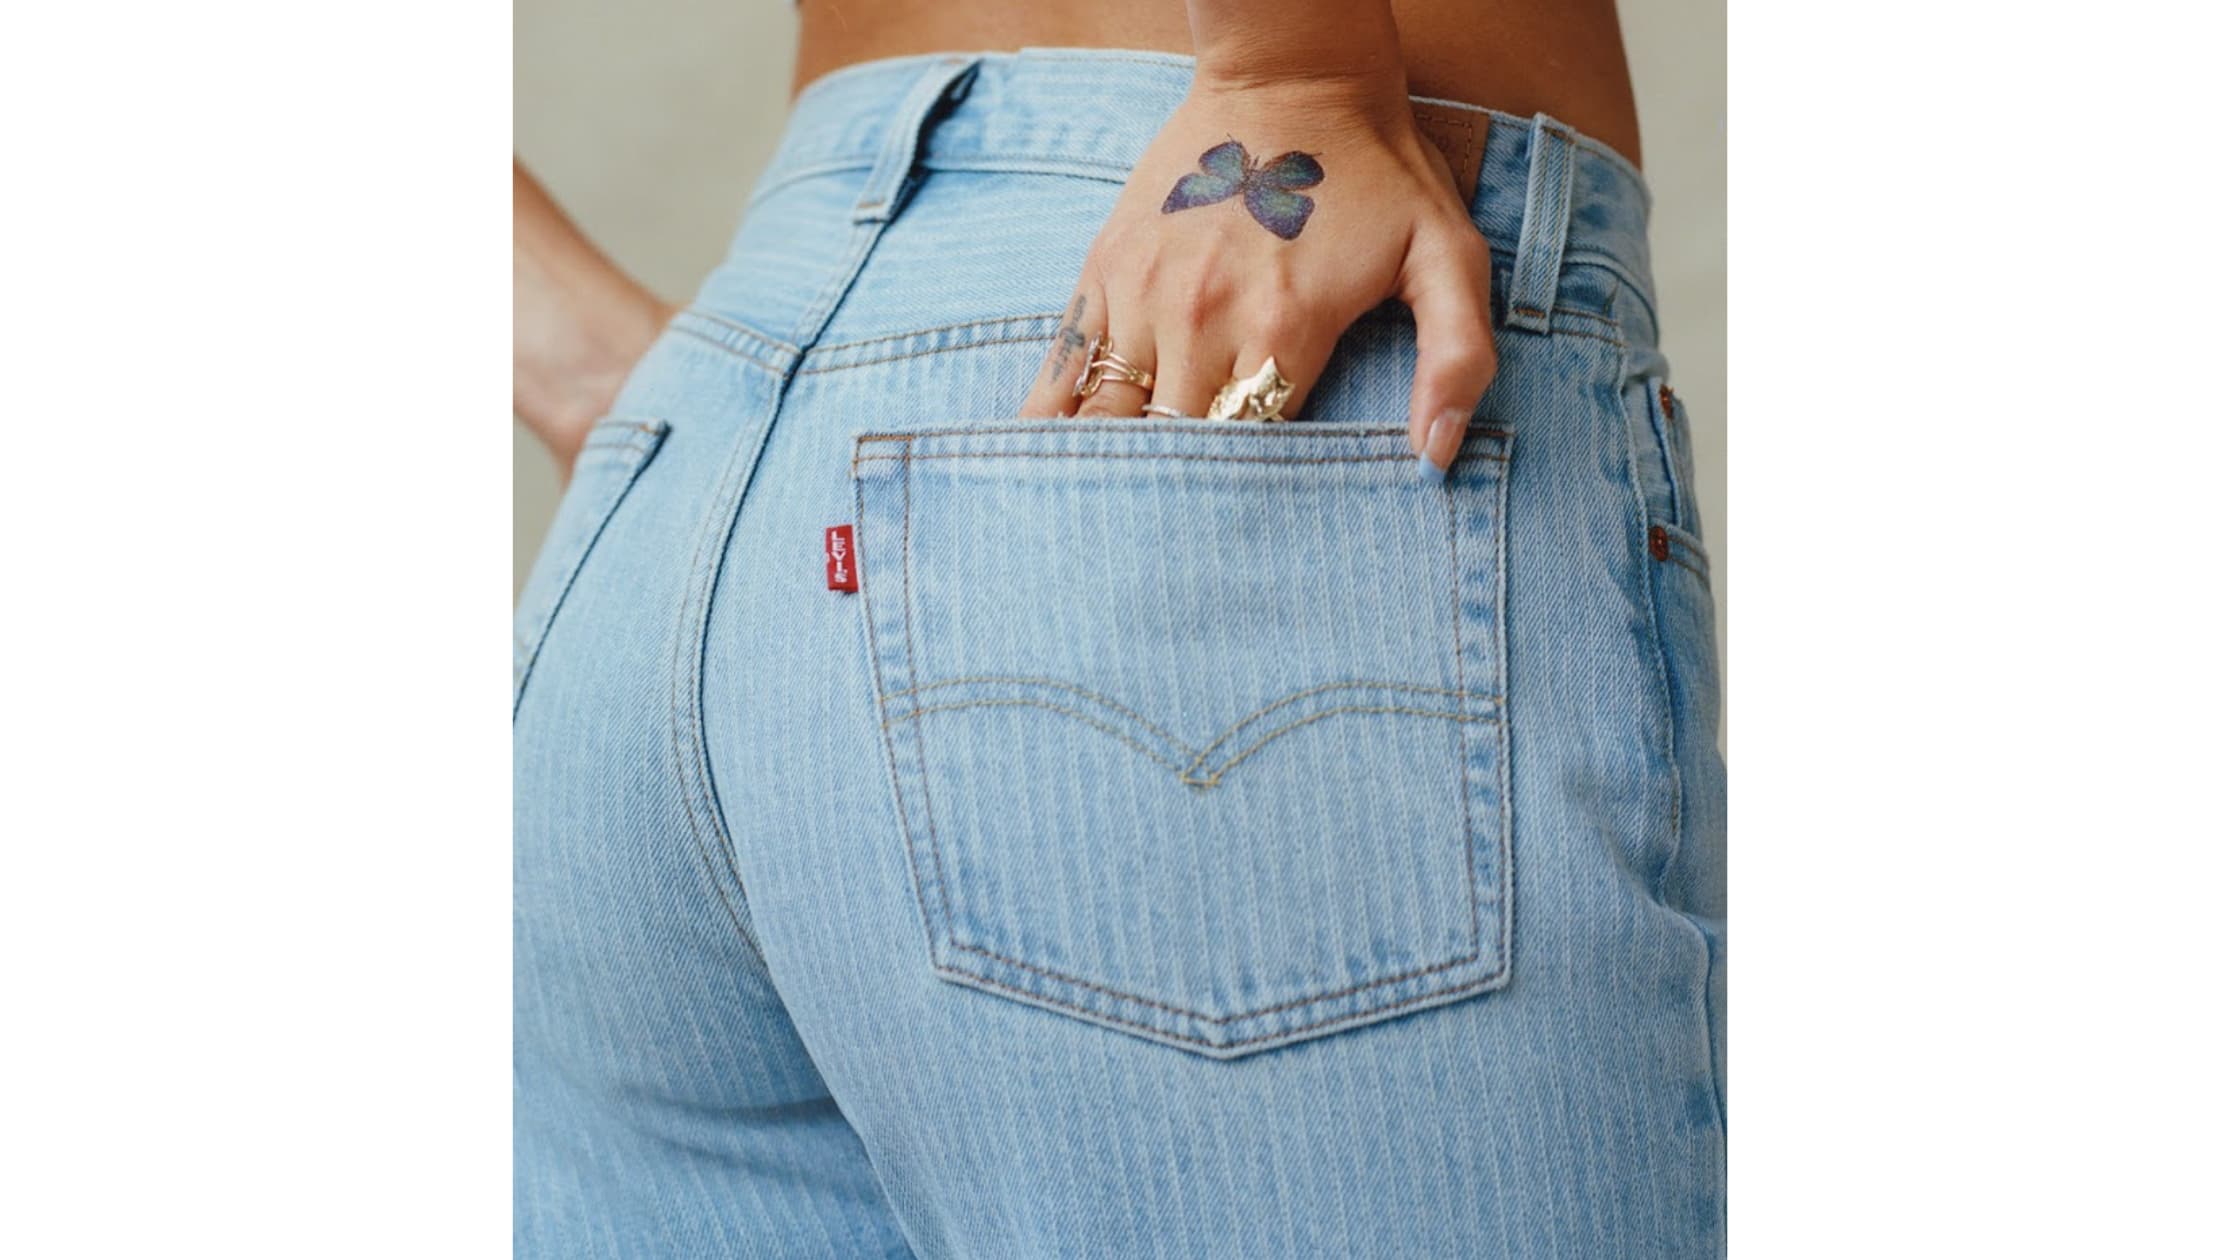 https://marcasmais.com.br/wp-content/uploads/2023/02/levis-jeans.jpg